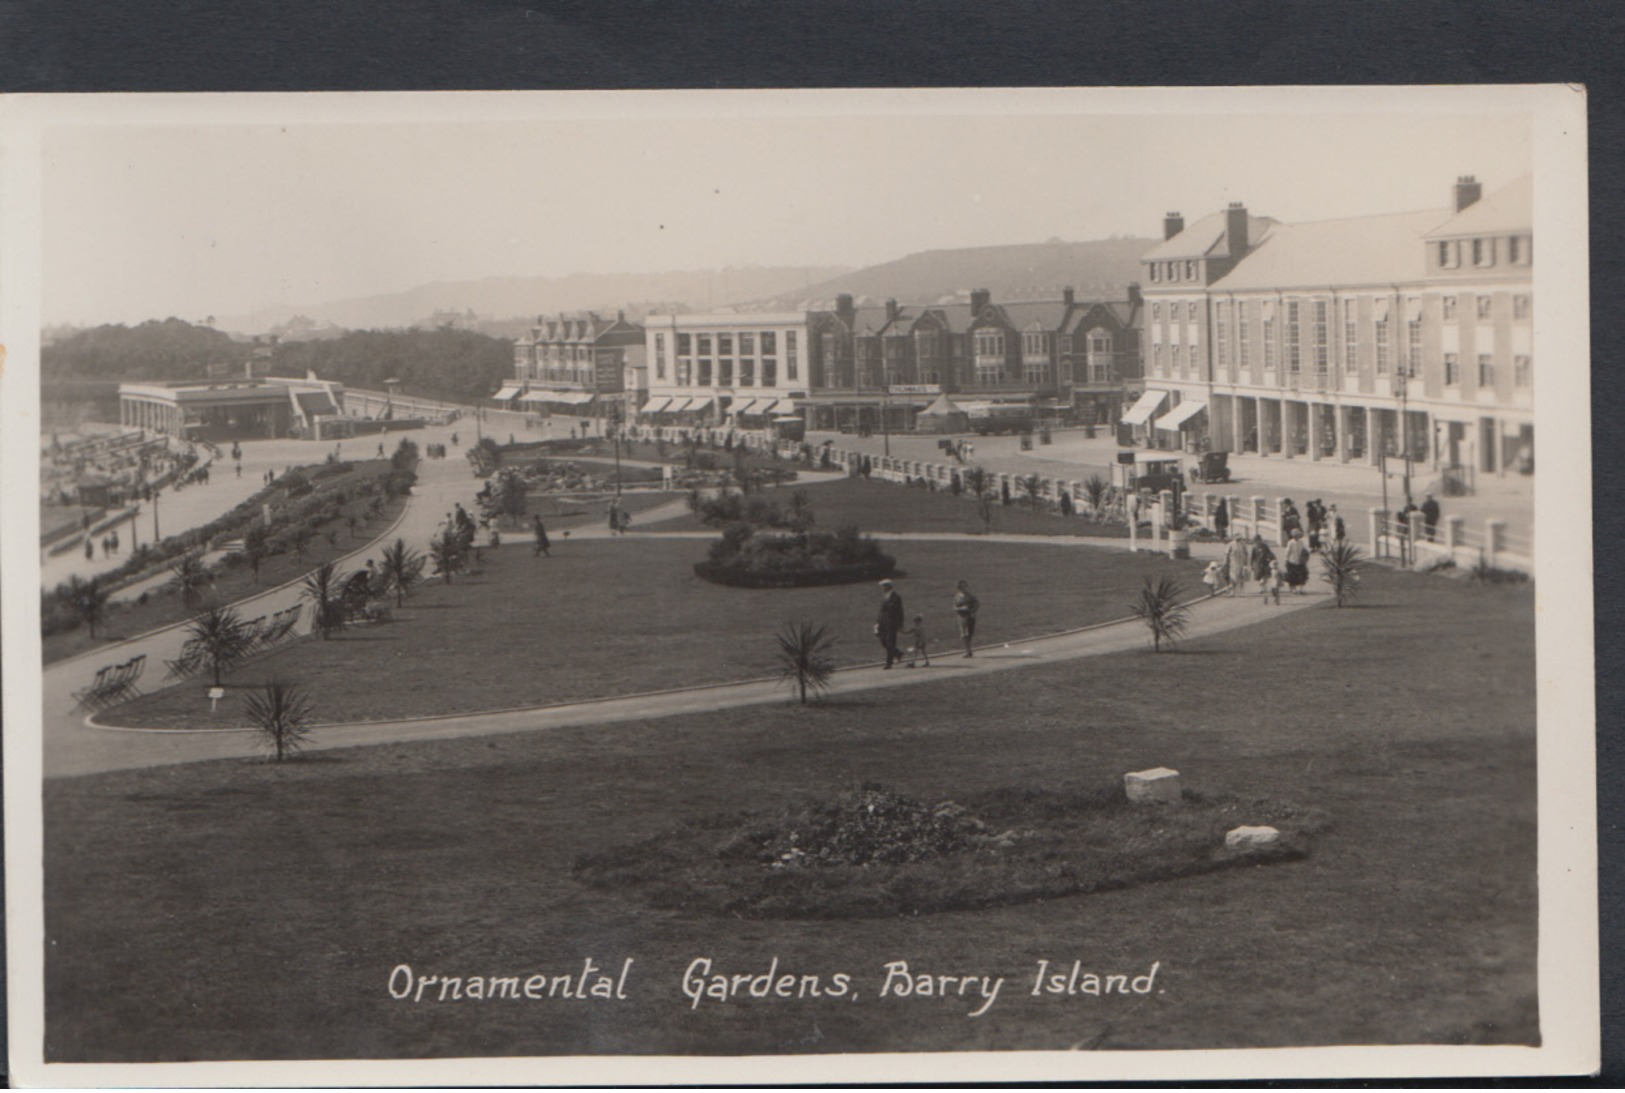 Wales Postcard - Ornamental Gardens, Barry Island  DC1388 - Glamorgan